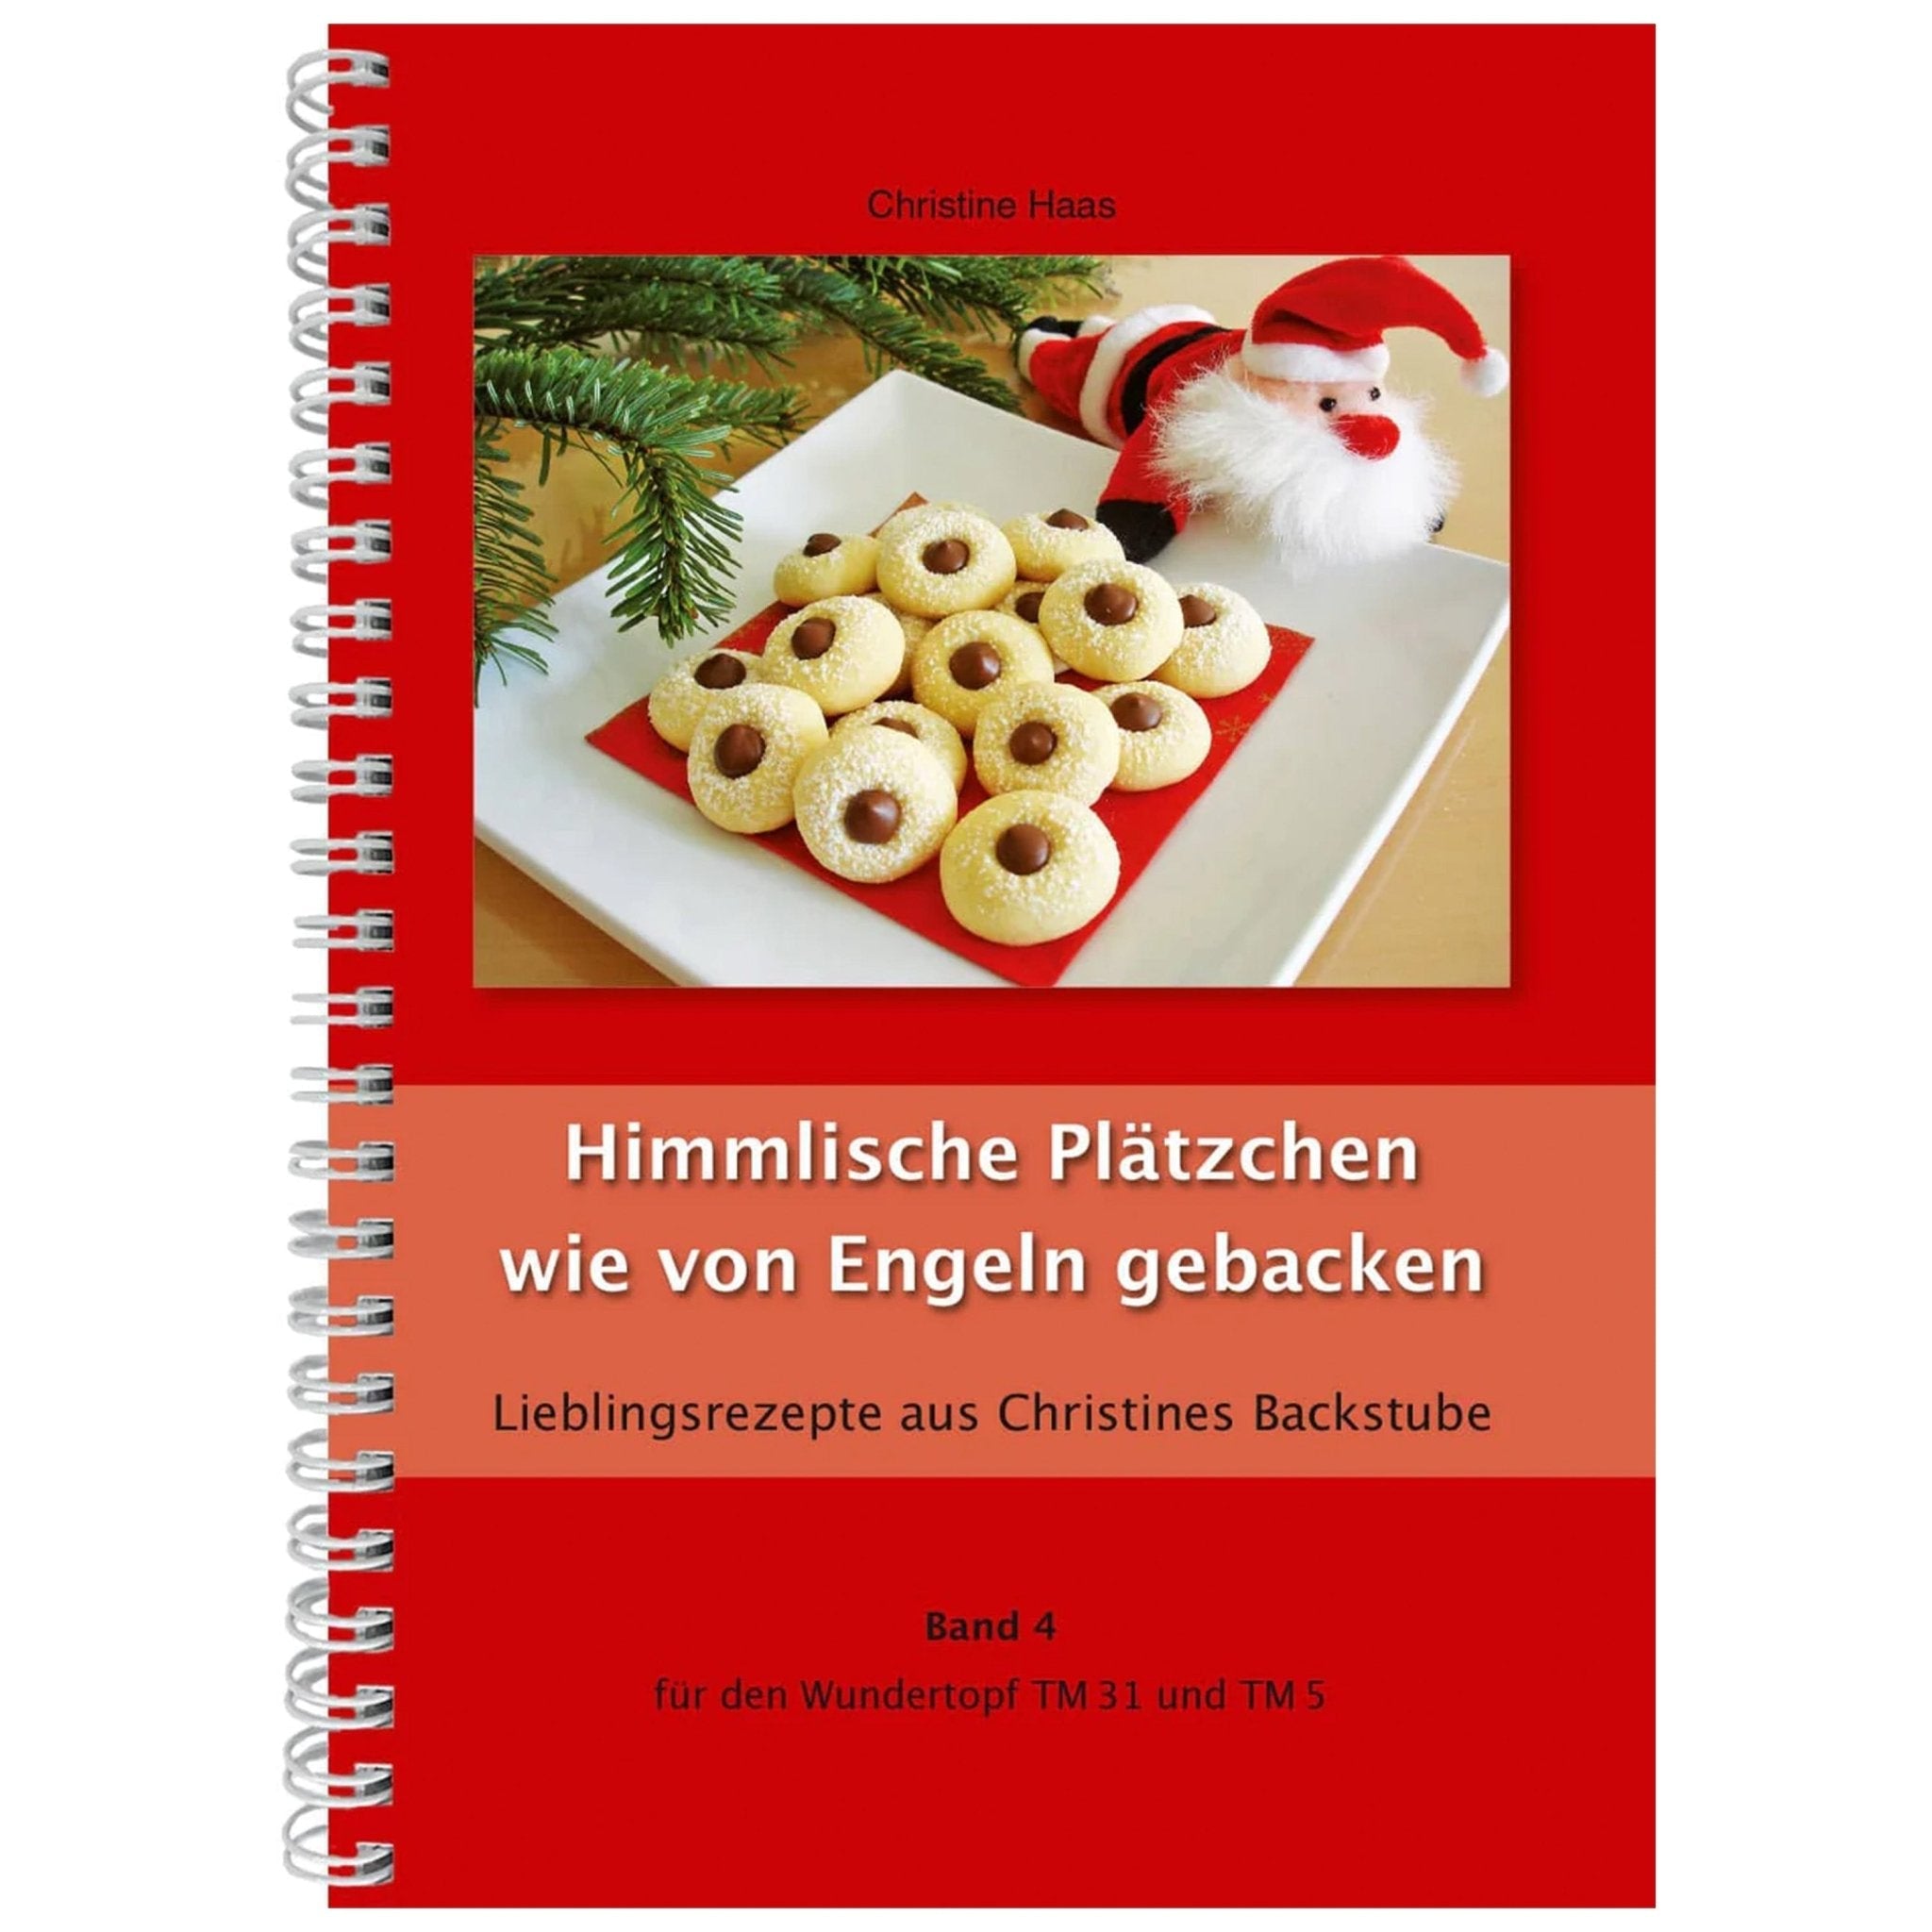 Himmlische Plätzchen wie von Engeln gebacken | Christine Haas | Band 4 - Wundermix GmbH